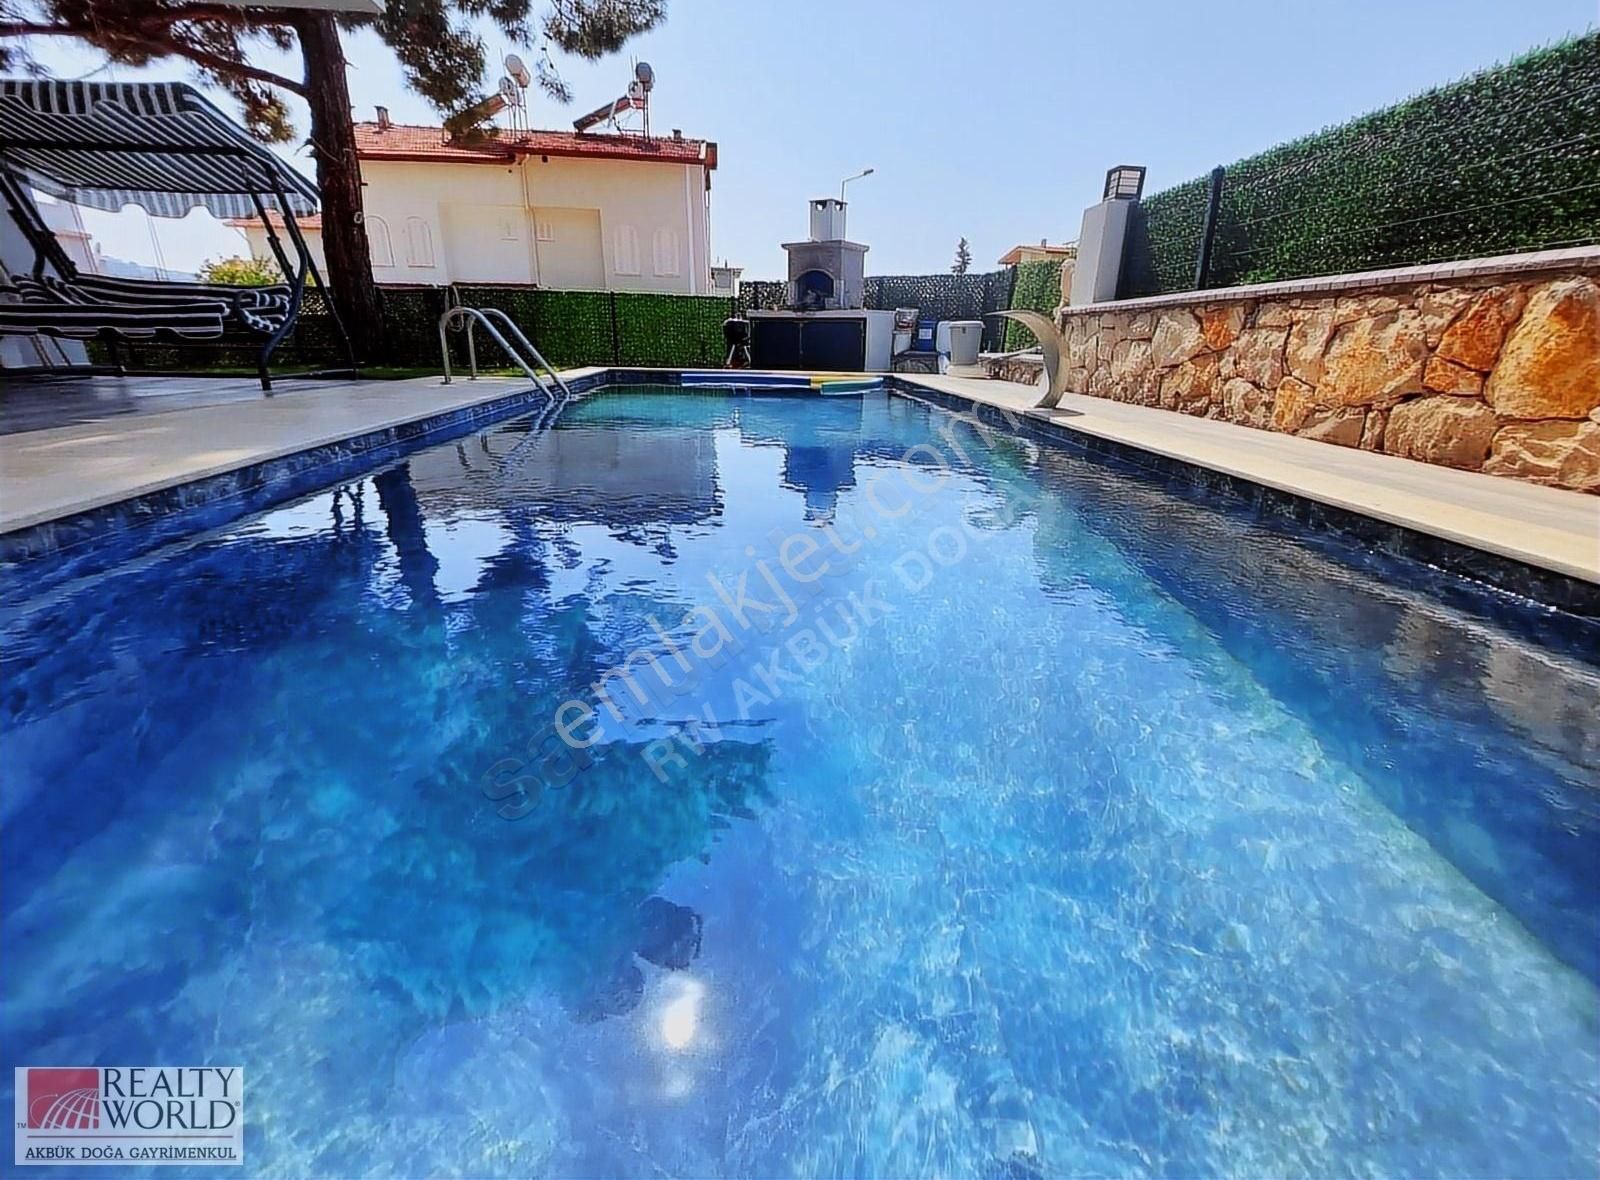 Didim Akbük Satılık Villa Didim Akbük'te Acil satılık özel havuzlu sıfır villa